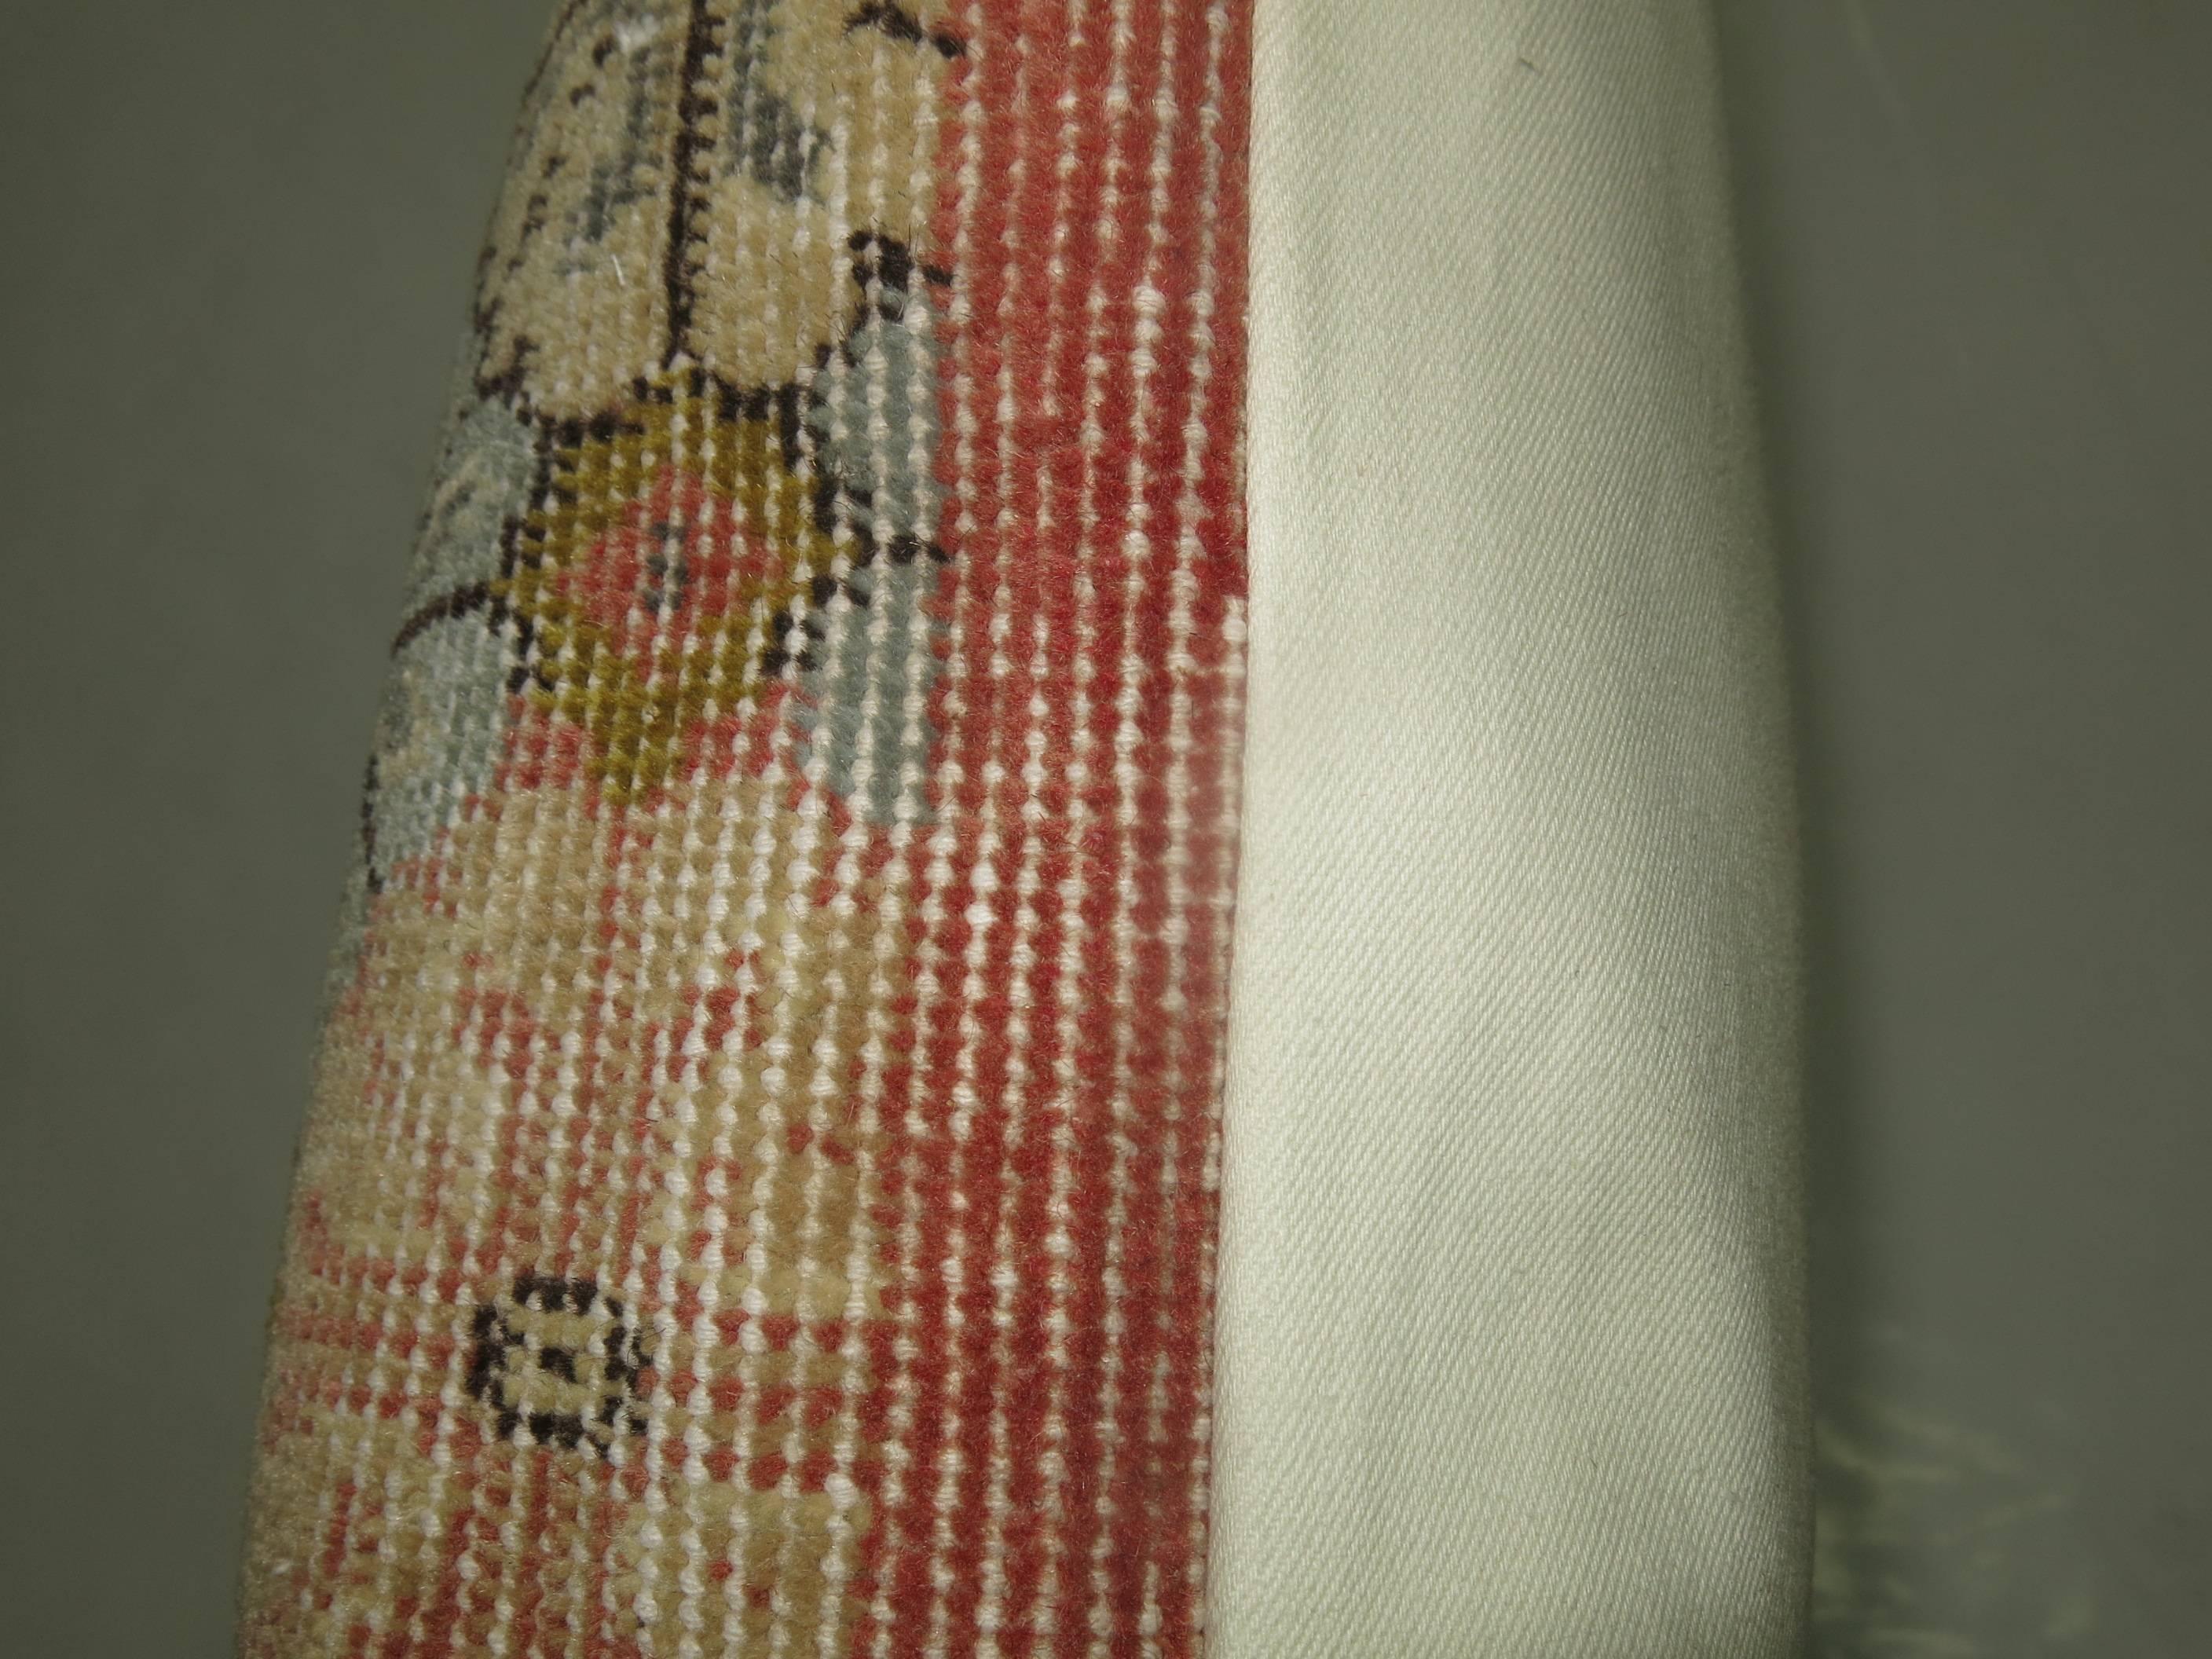 Kissen aus einem türkischen Teppich im Shabby-Chic-Stil.

24'' x 28''